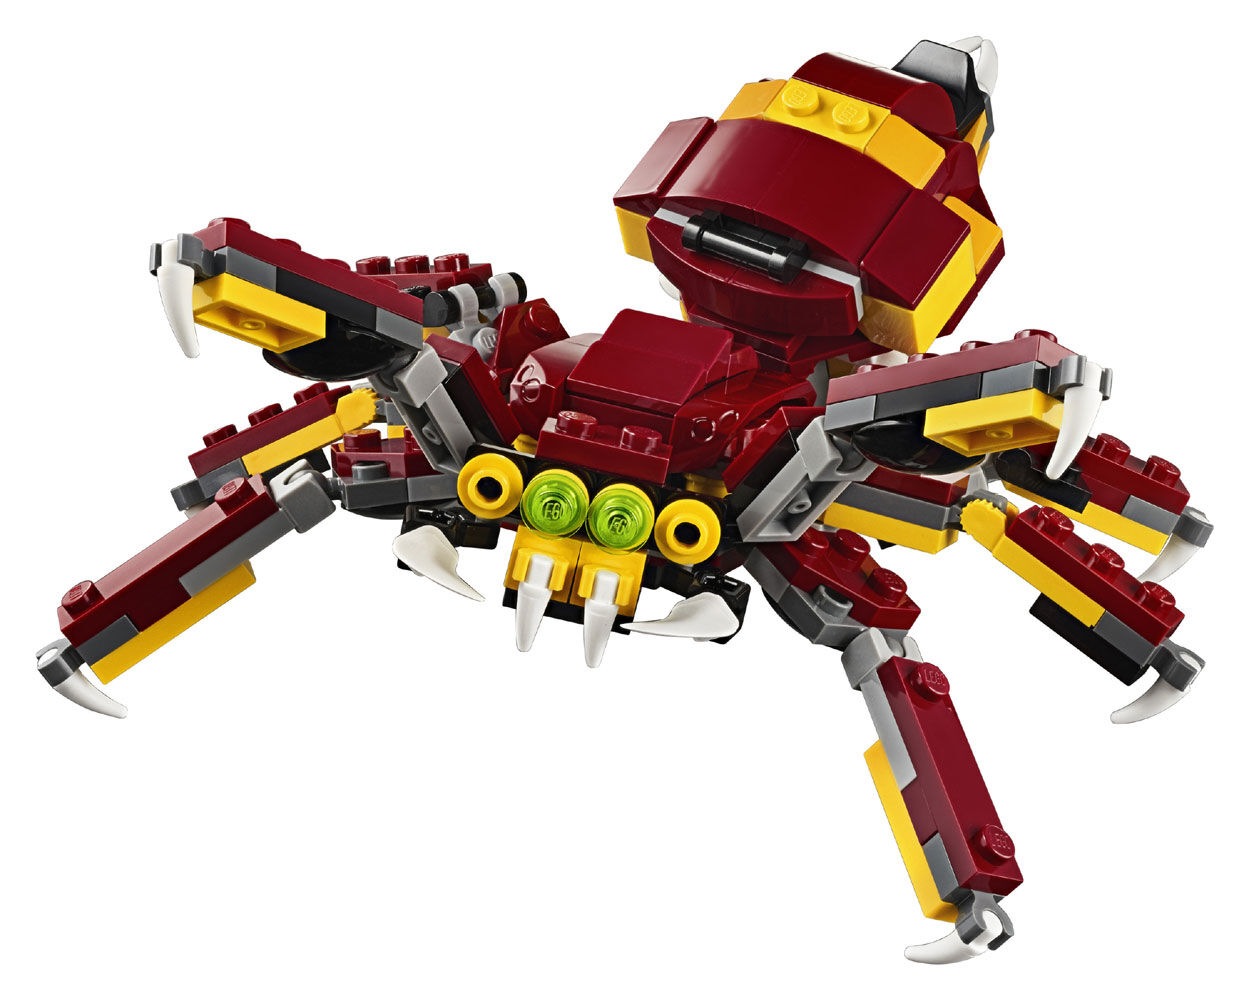 Lego 31073 Creator créatures mythiques Fire Breathing Dragon 1 en 3-Modèle Toy Set